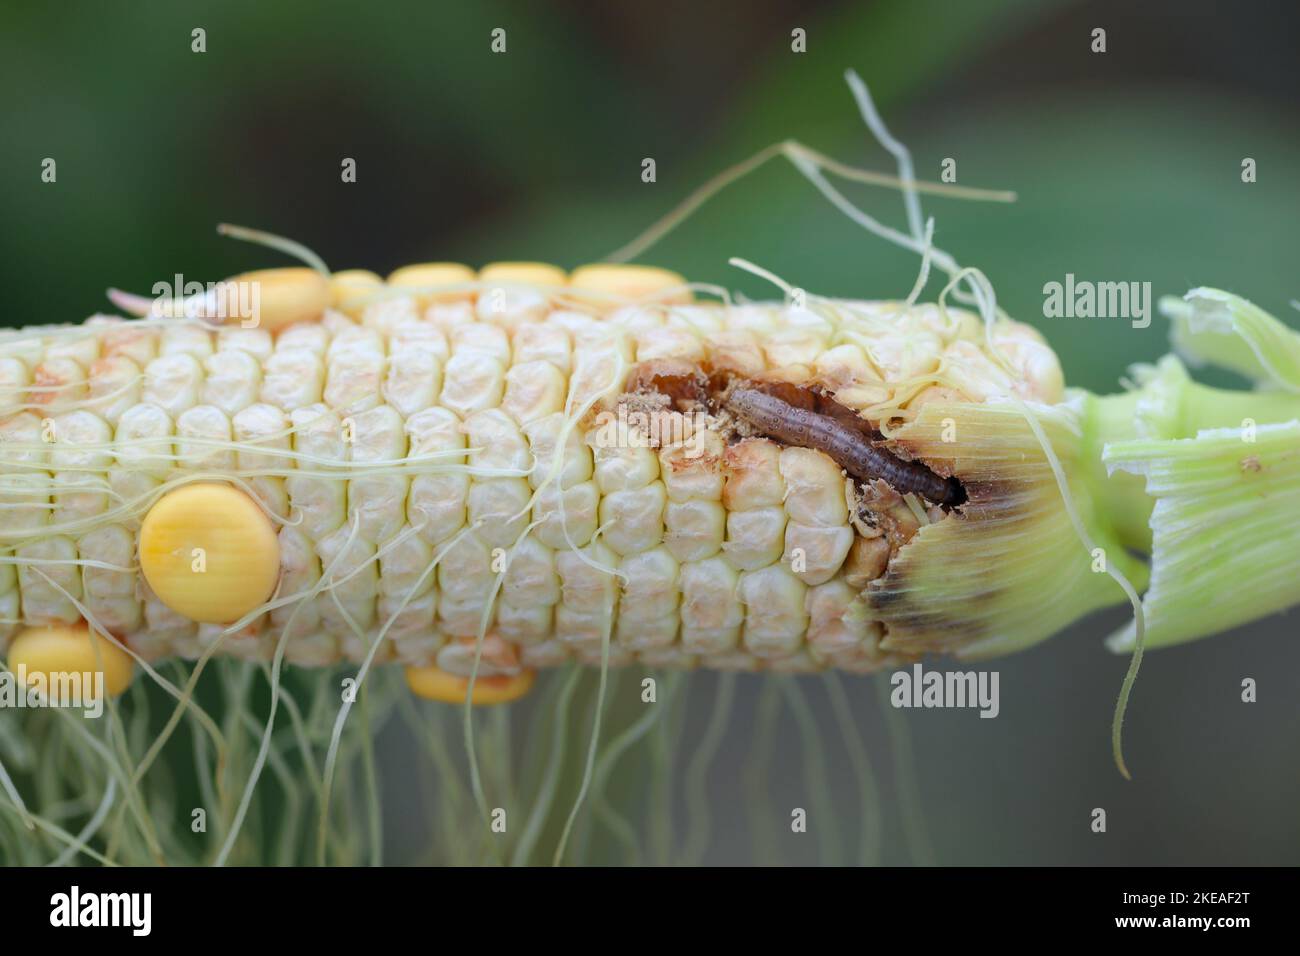 Maïs, maïs endommagé par la larve, chenille de l'Ecorer de maïs européen (Ostrinia nubilalis). C'est un des ravageurs les plus importants de la récolte de maïs. Banque D'Images